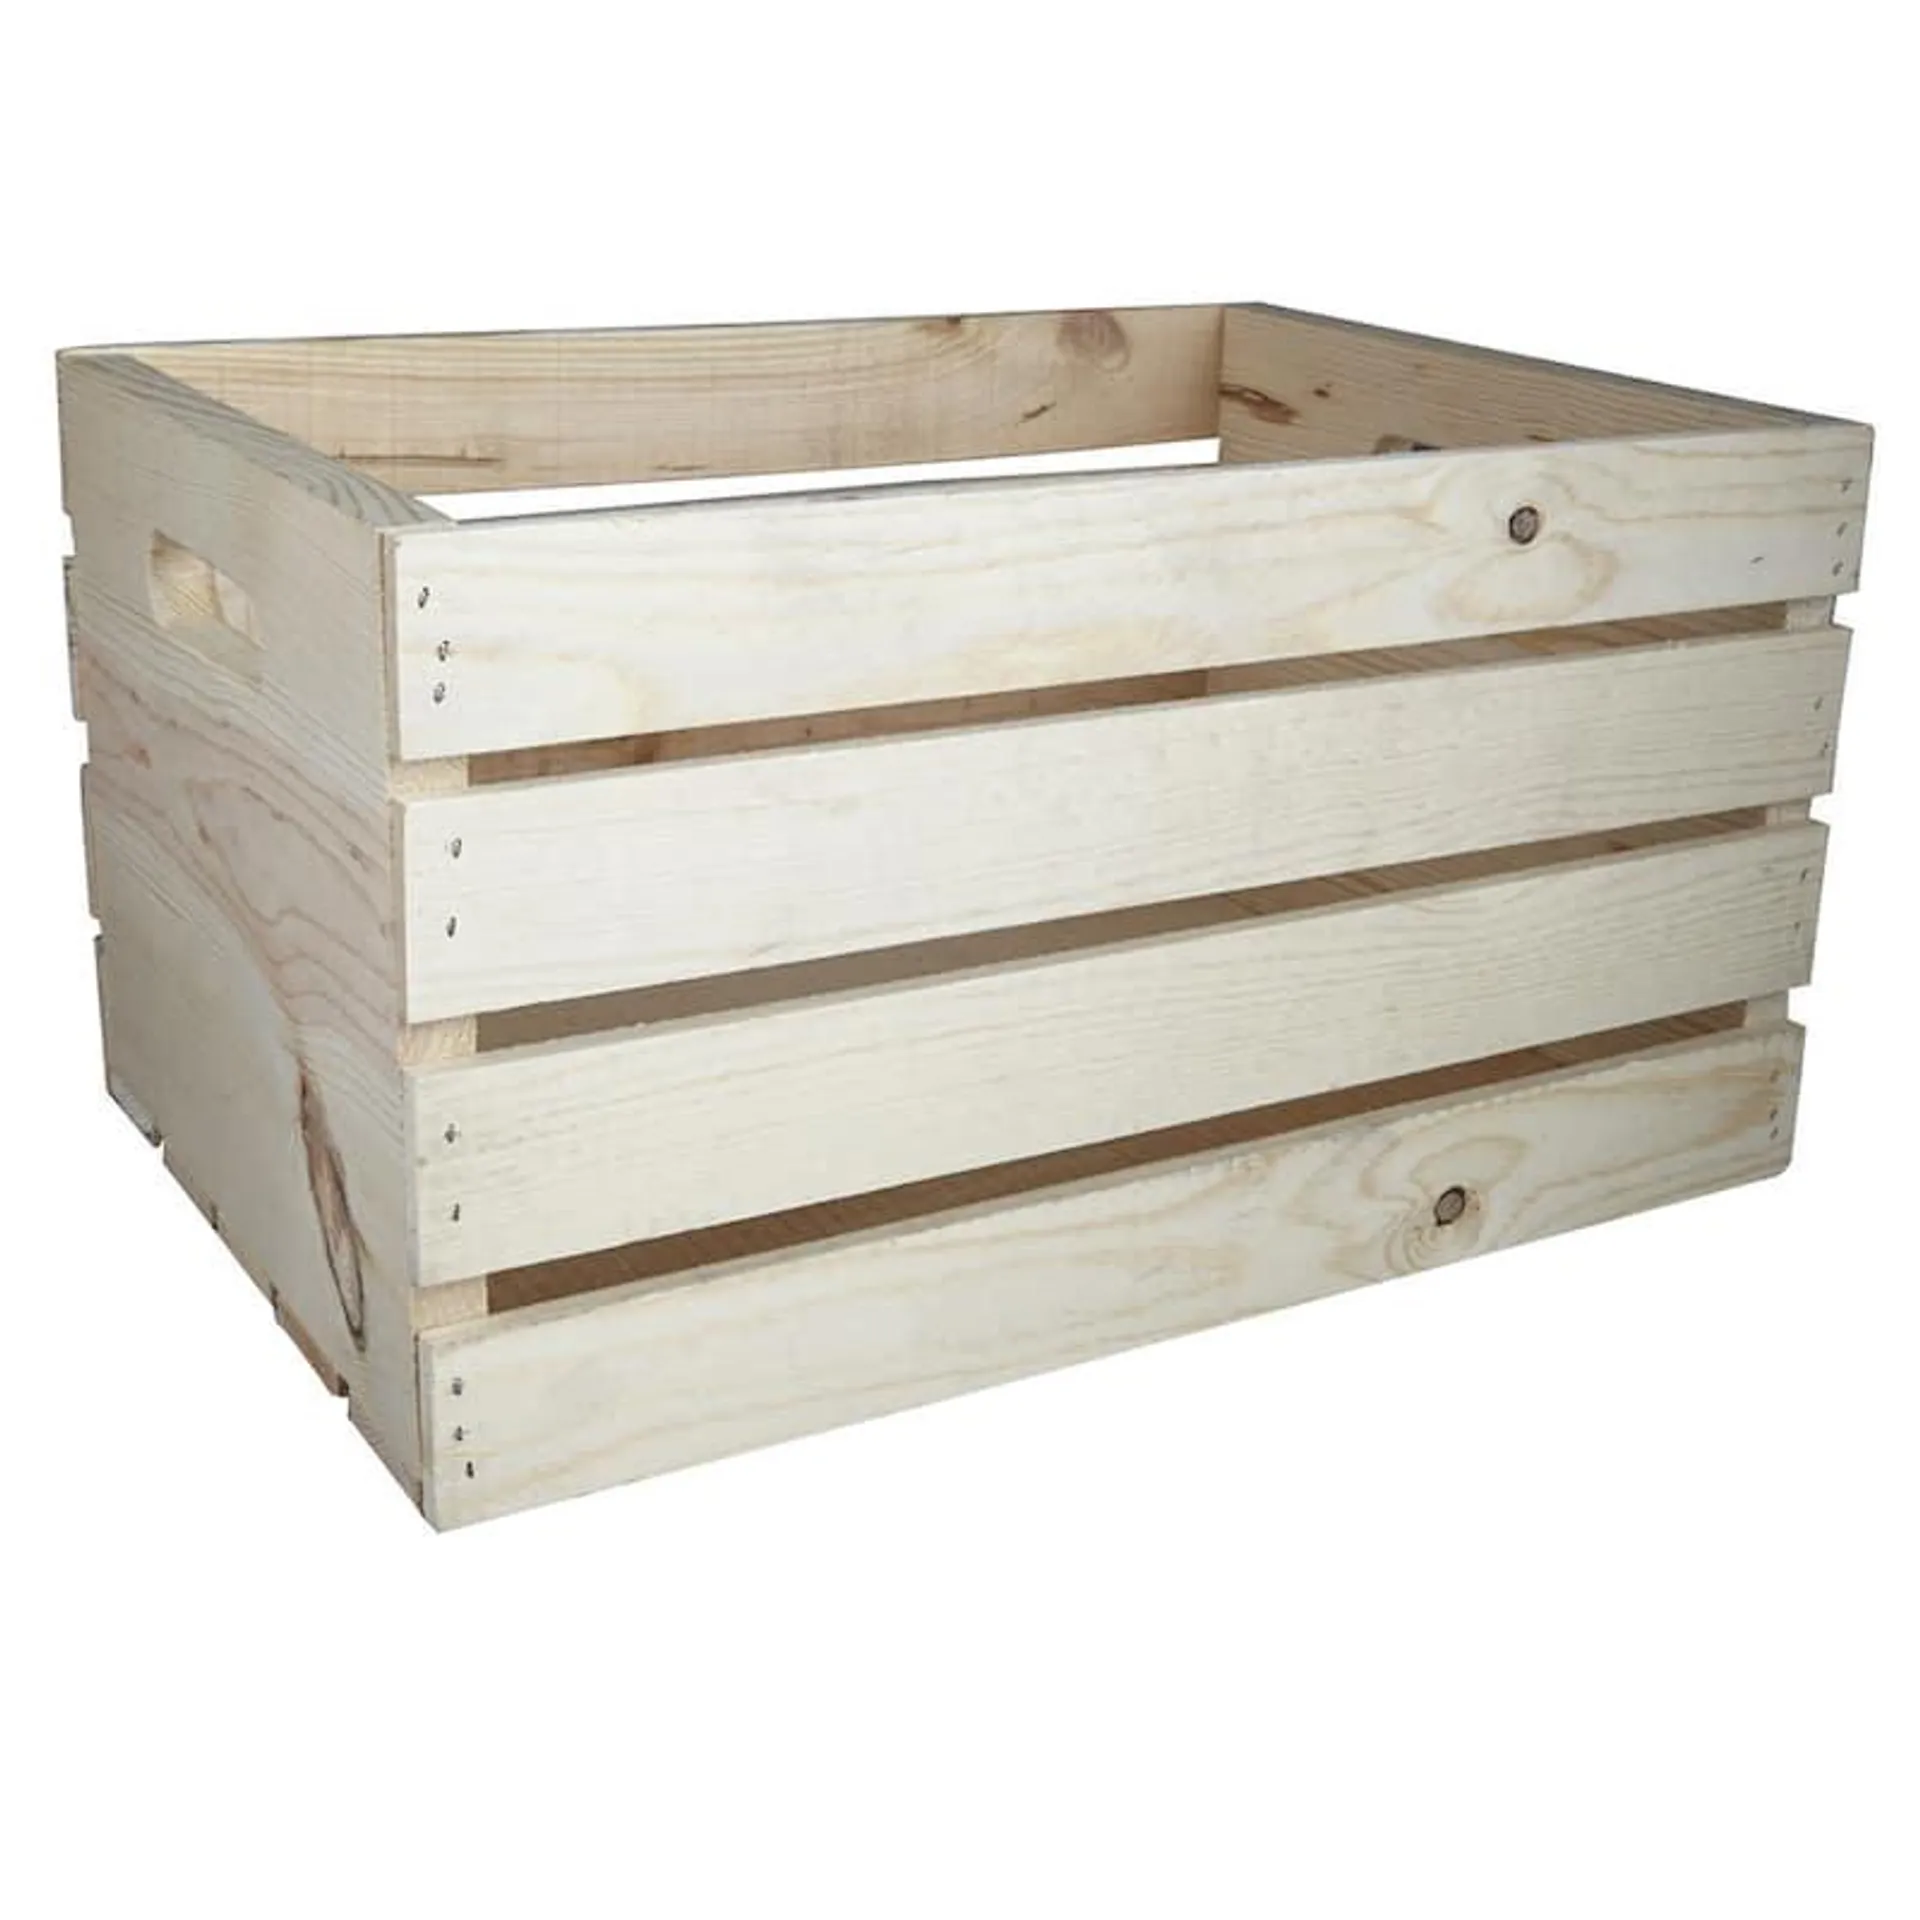 Storage Baskets & Boxes